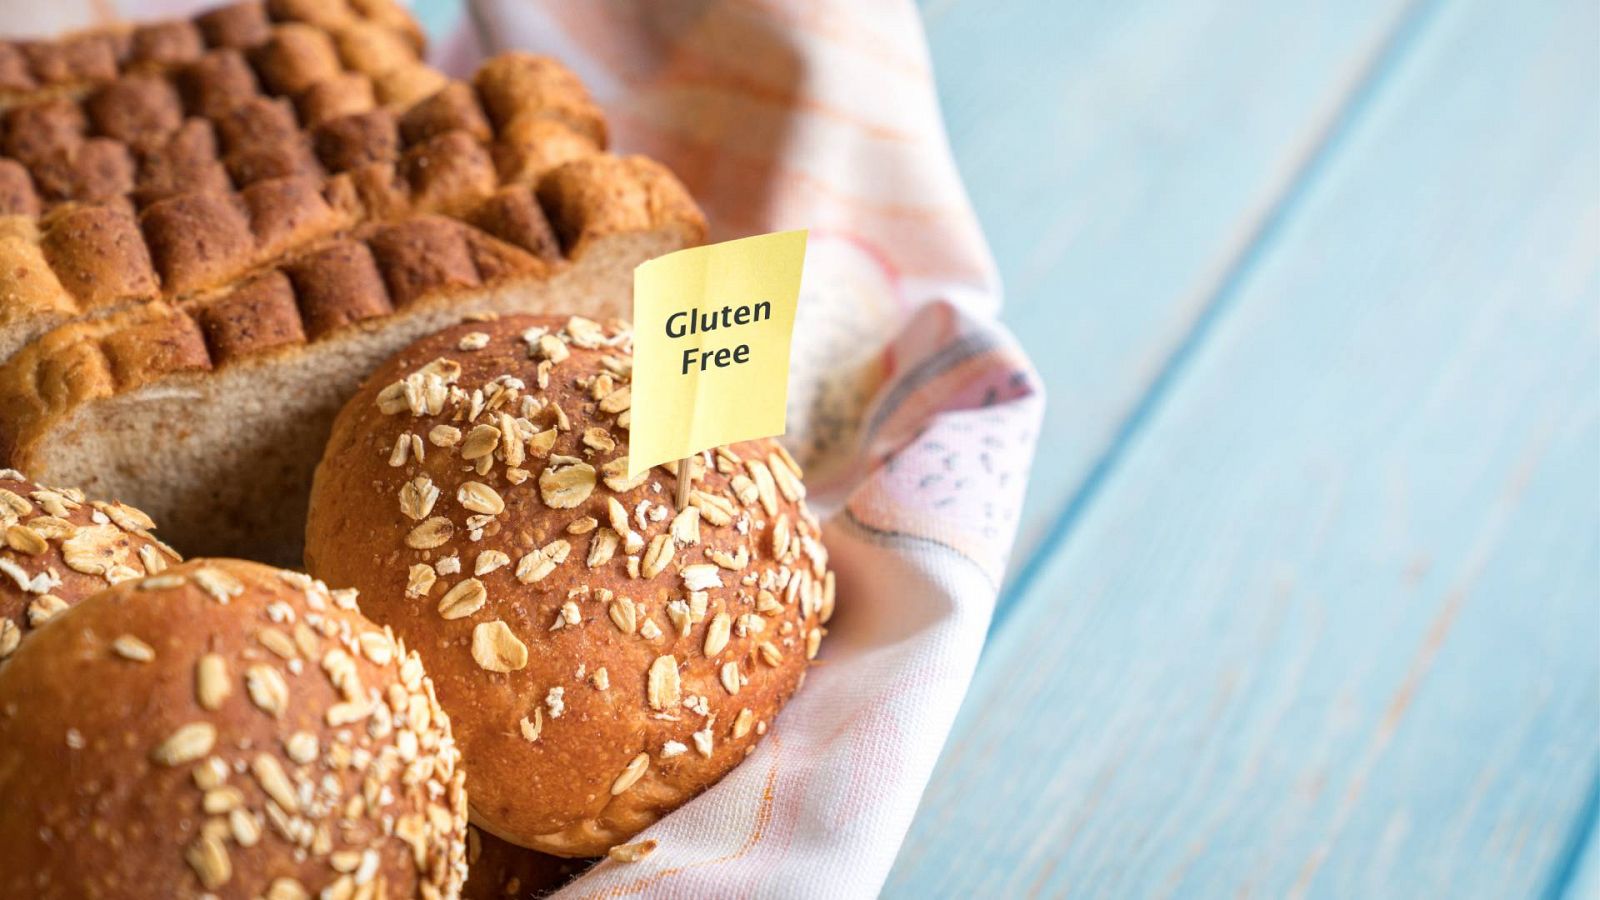 Una cesta de pan y bollos con etiqueta sin gluten, en una imagen de archivo